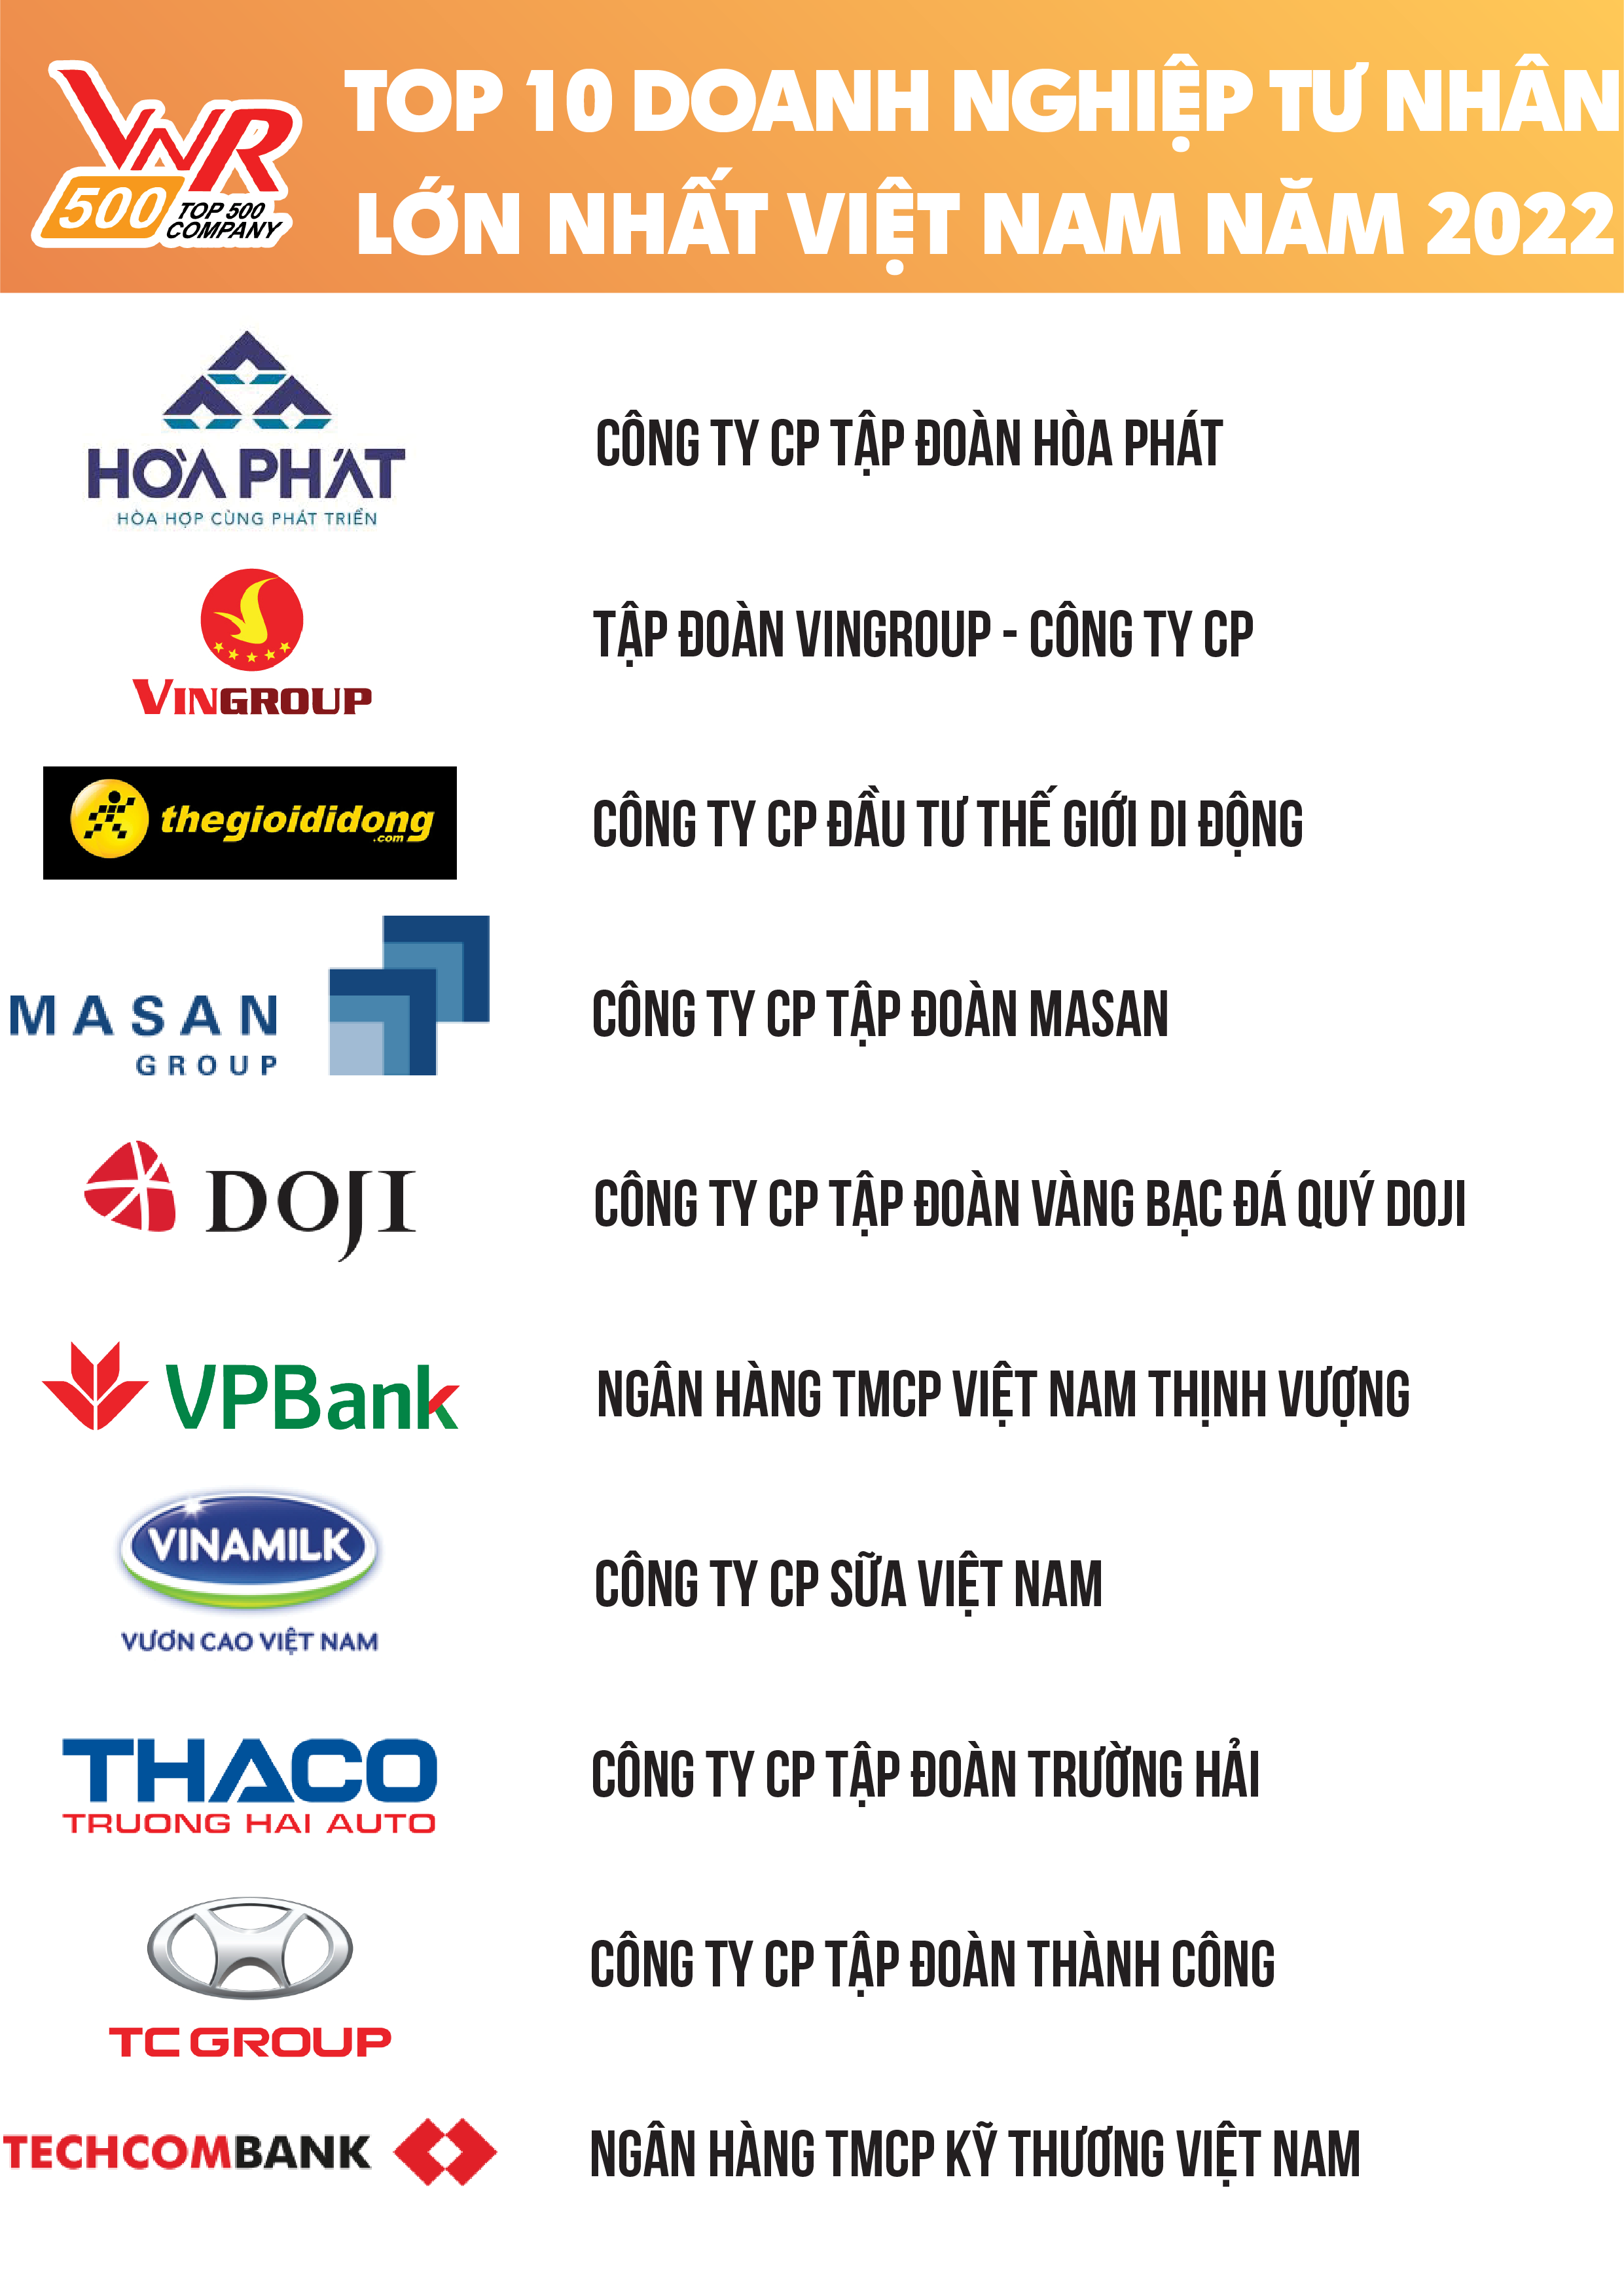 
Nguồn: Bảng xếp hạng VNR500, thực hiện bởi Vietnam Report - Tháng 11/2022
